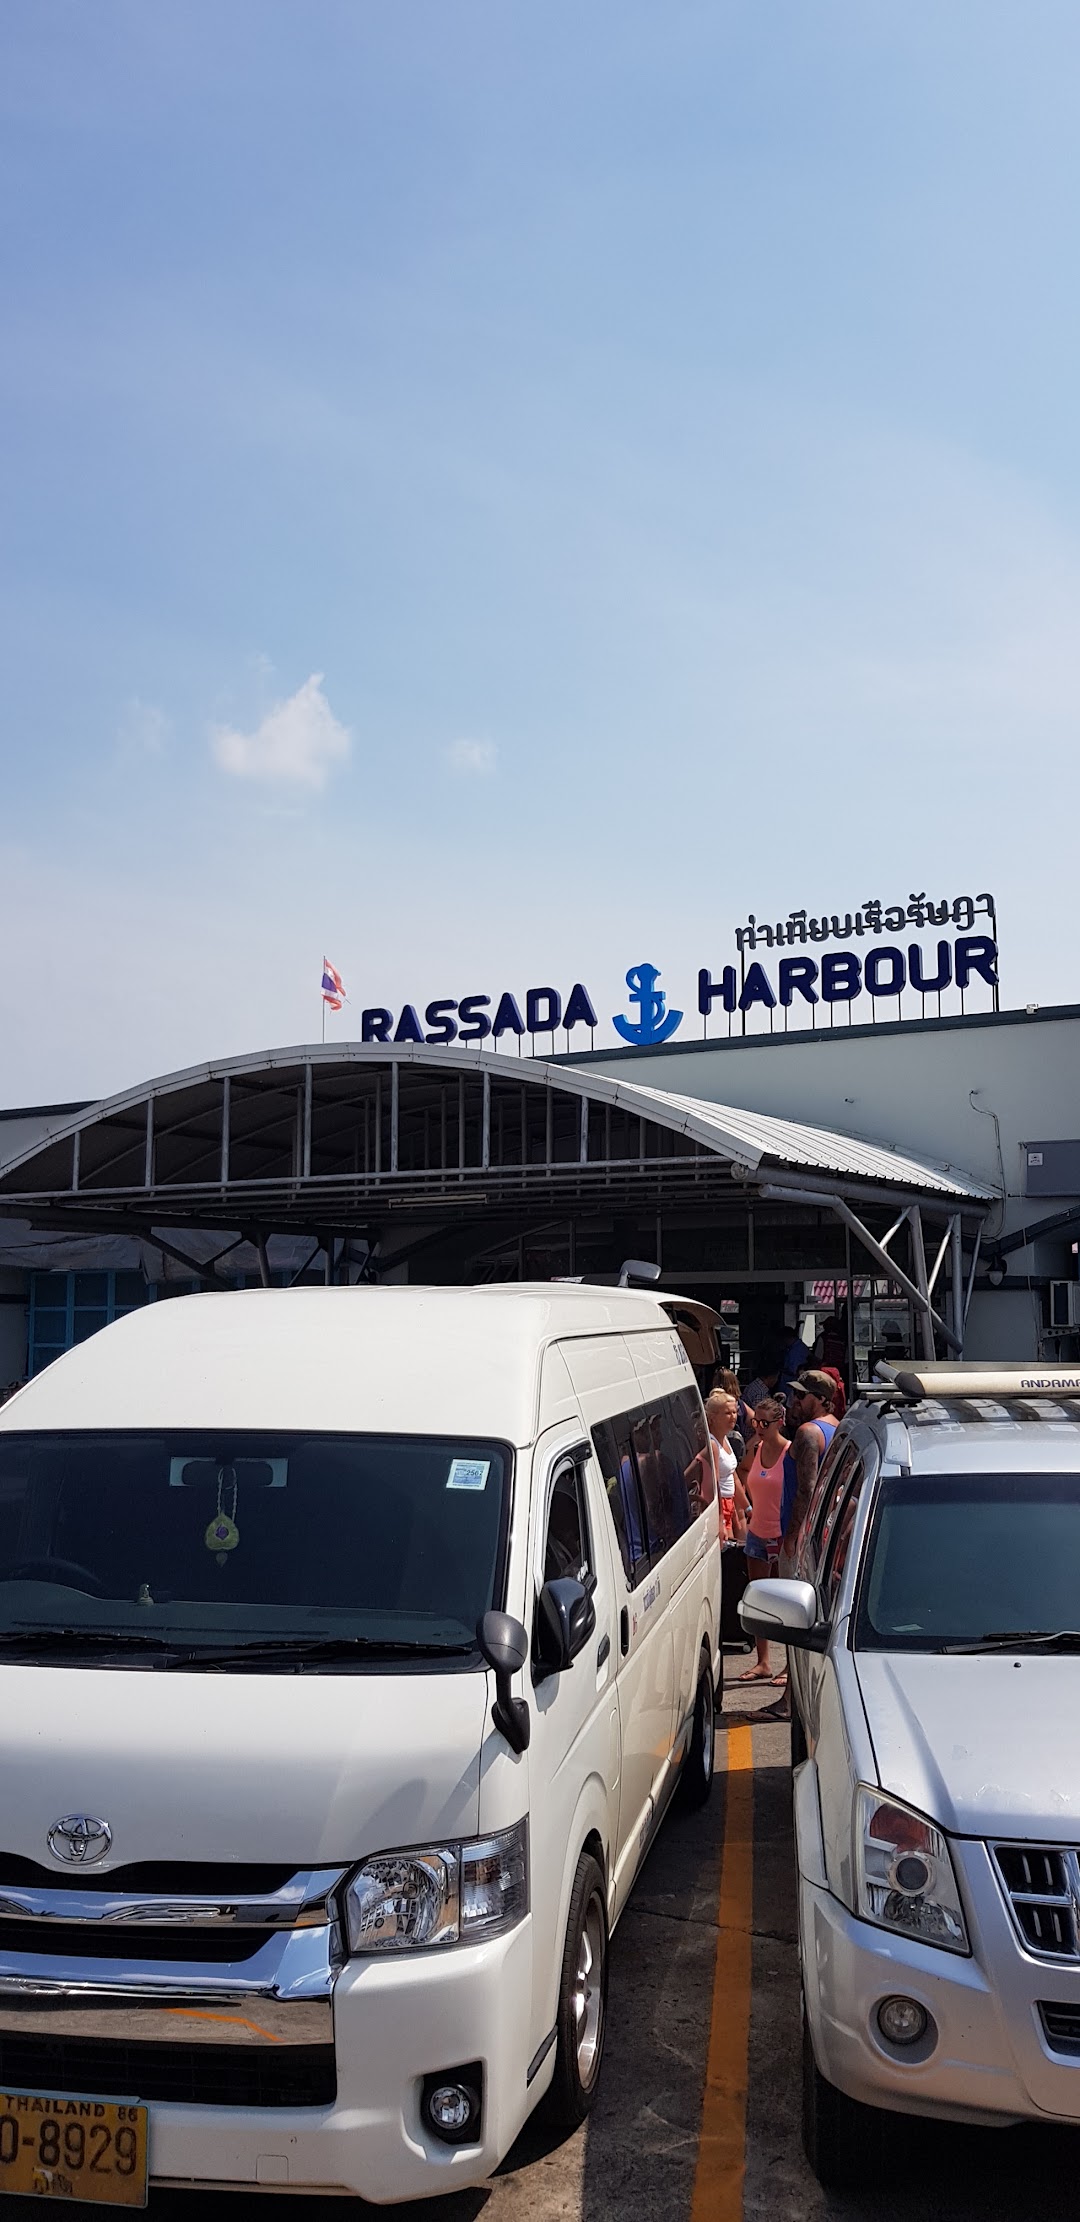 Rashada Harbour Shipyard